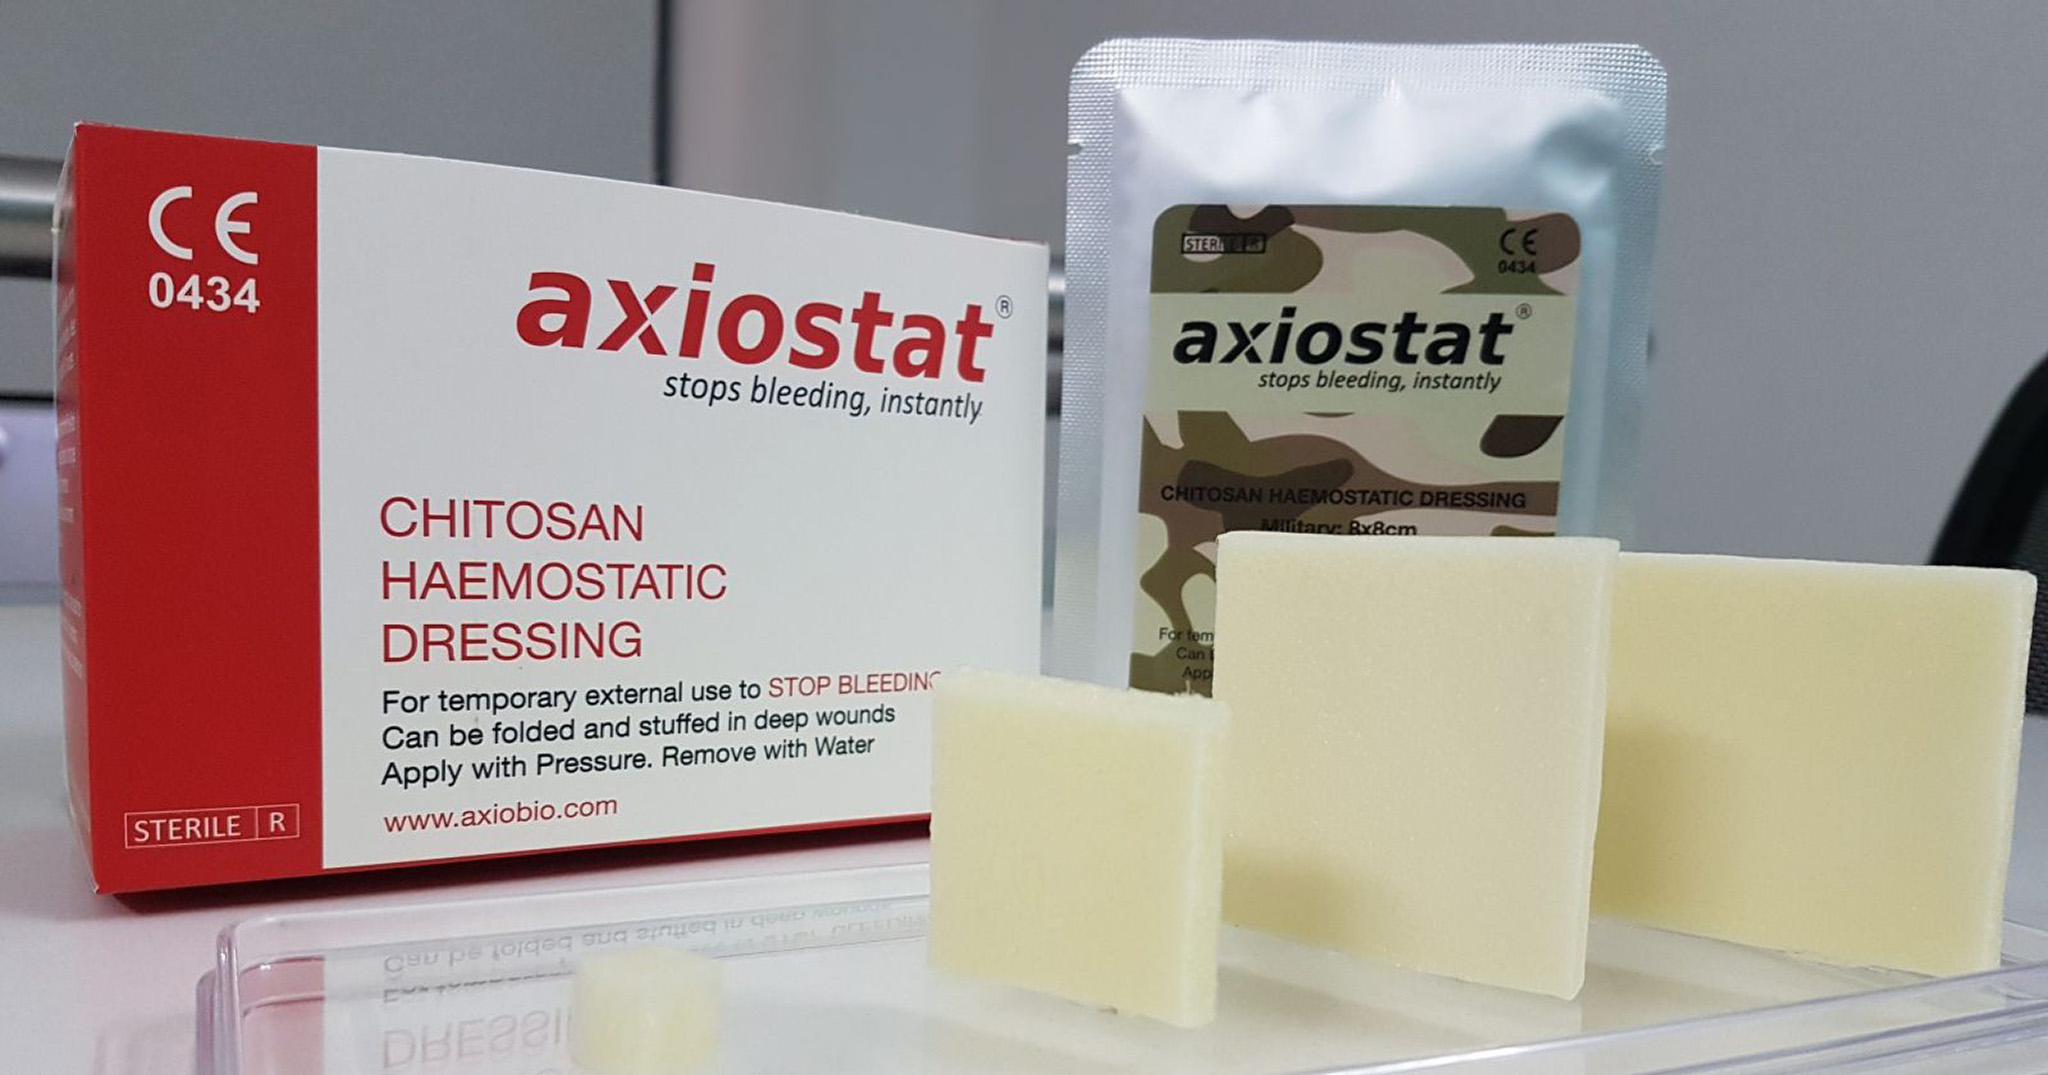 Axiostat - Băng gạc giúp liền vết thương hở cực kỳ hiệu quả sử dụng trong quân đội